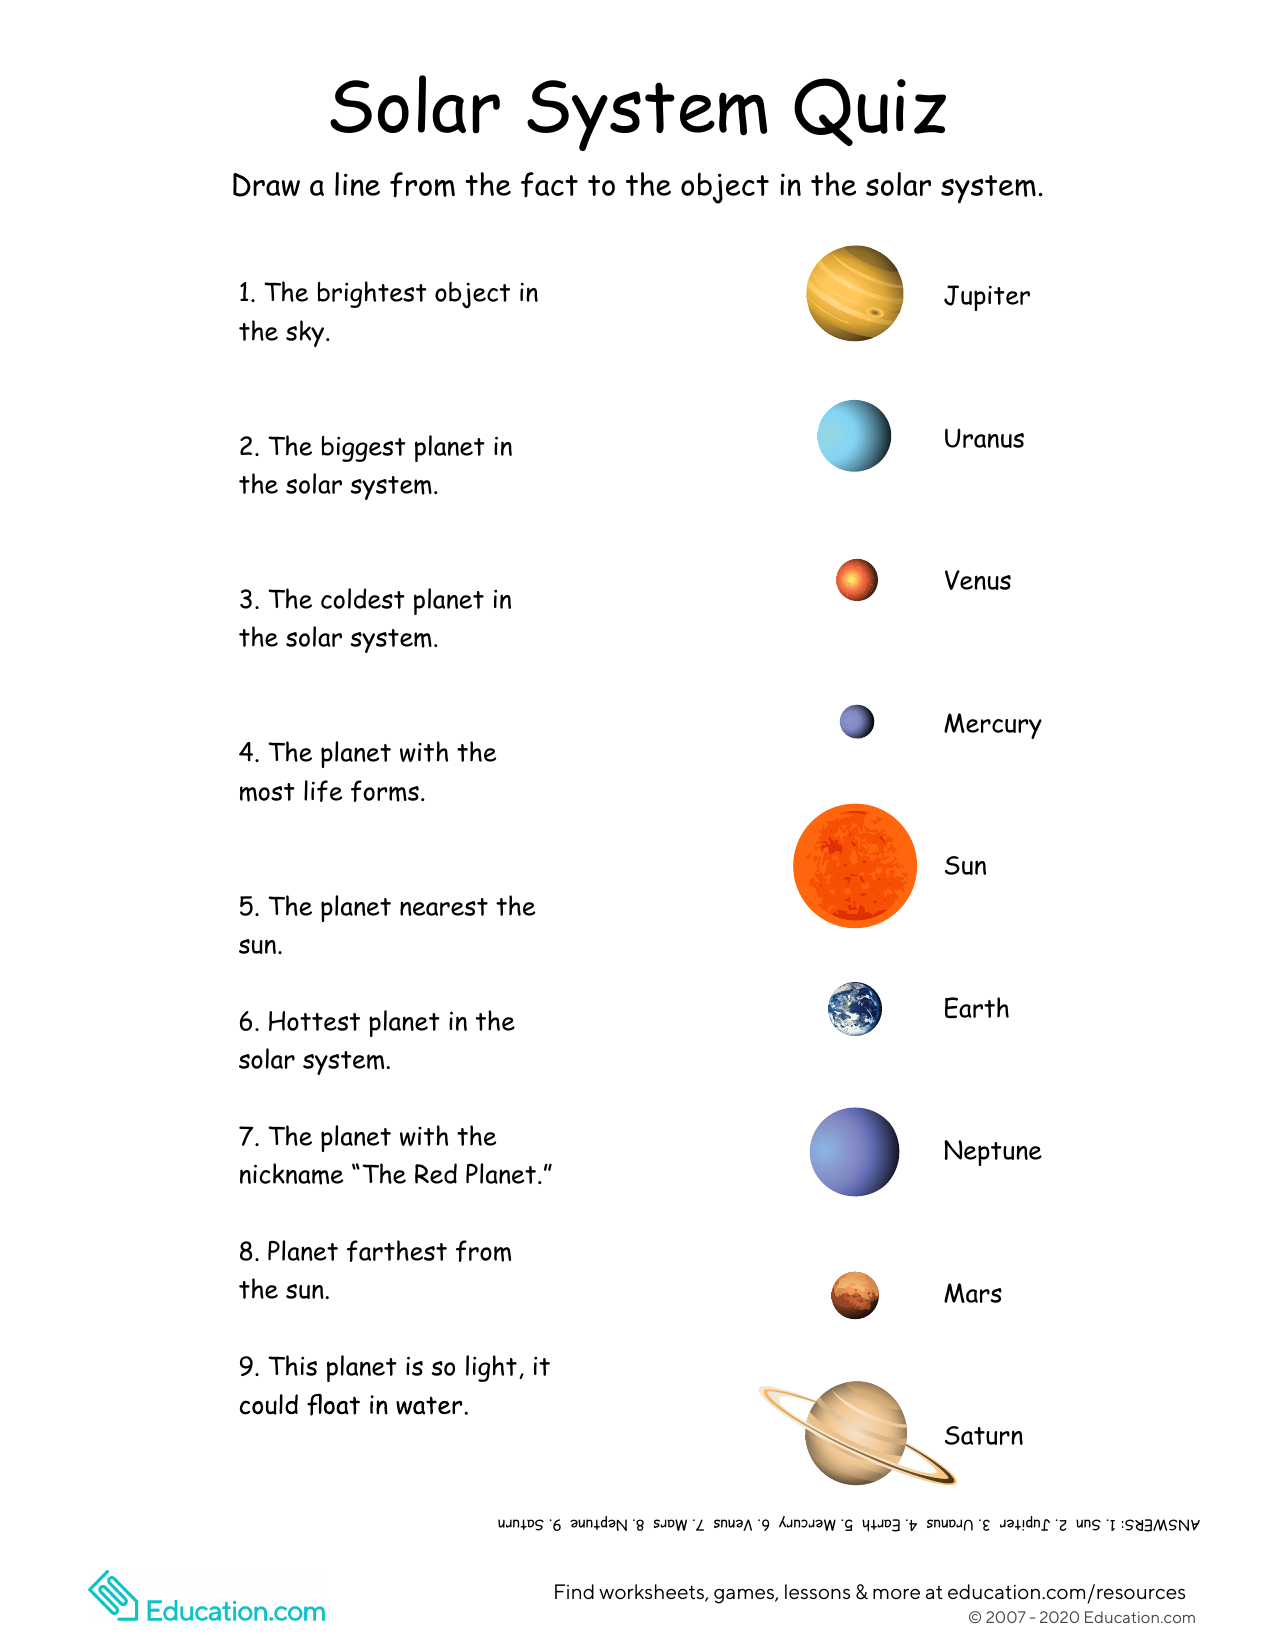 Planets questions. Названия планет на английском. Название планет с транскрипцией. Solar System задания. Названия планет на английском с транскрипцией.